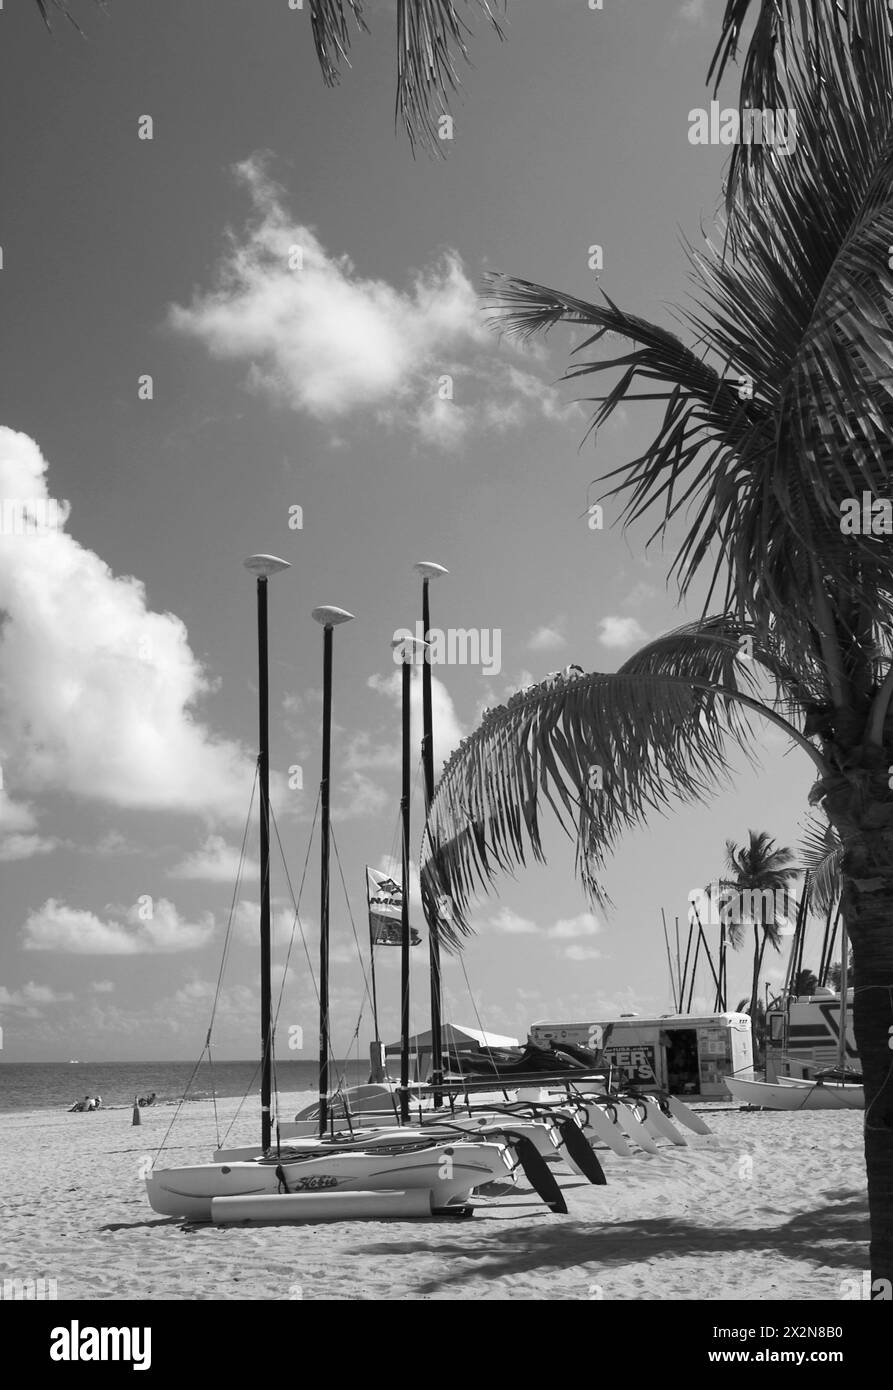 Stock Photo von einer Reihe von Segelbooten, die am Strand am Sunny Day in ft Lauderdale, Florida, USA, aufgereiht waren Stockfoto